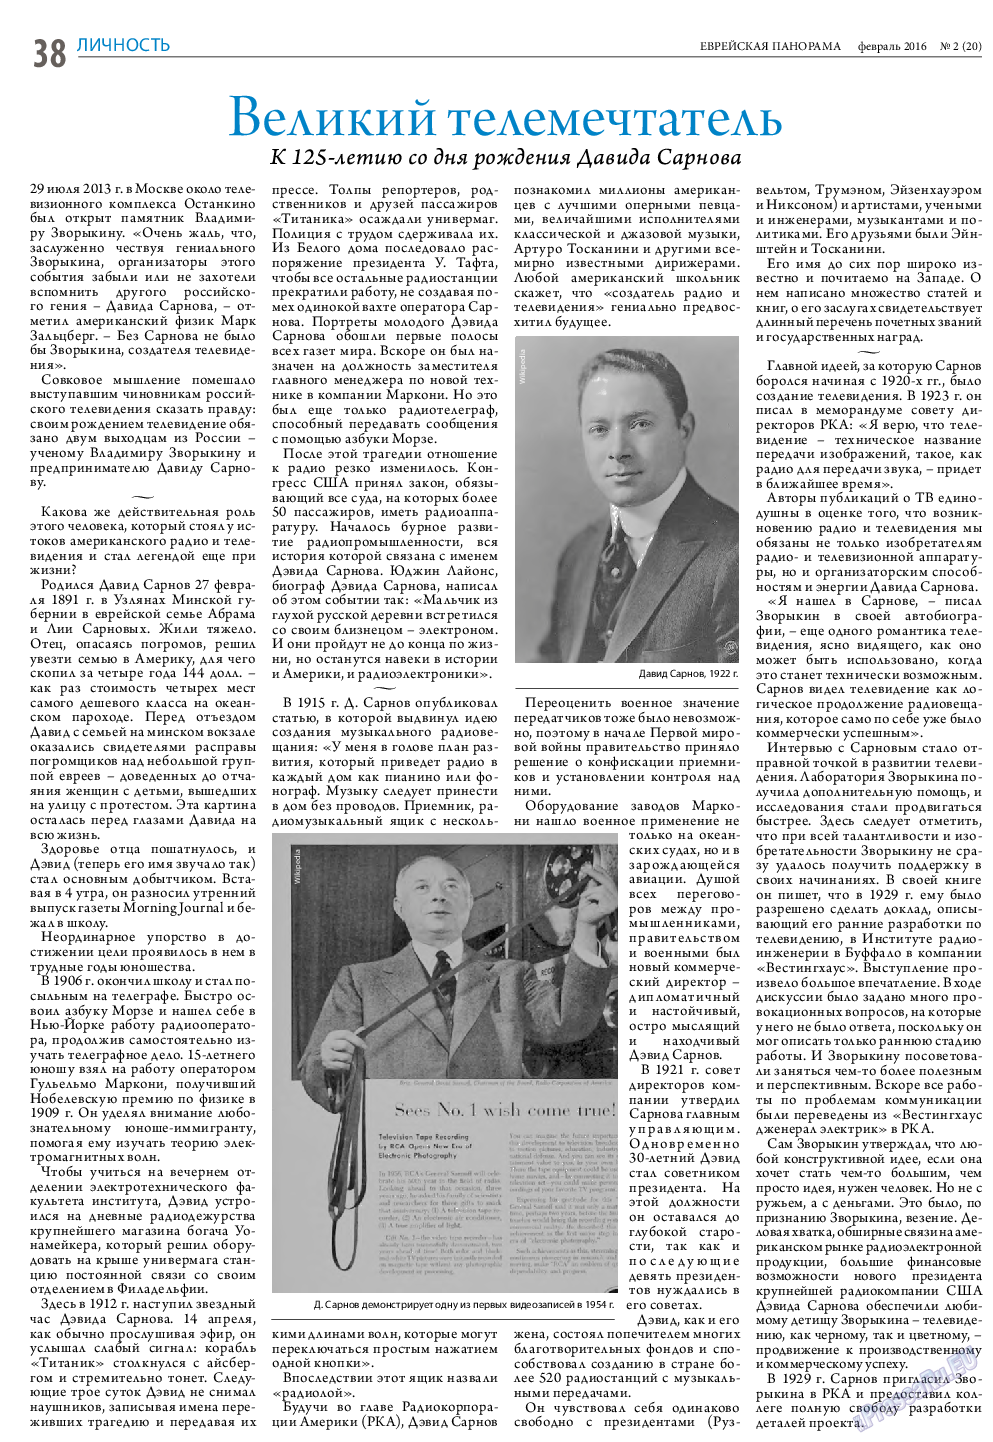 Еврейская панорама (газета). 2016 год, номер 2, стр. 38